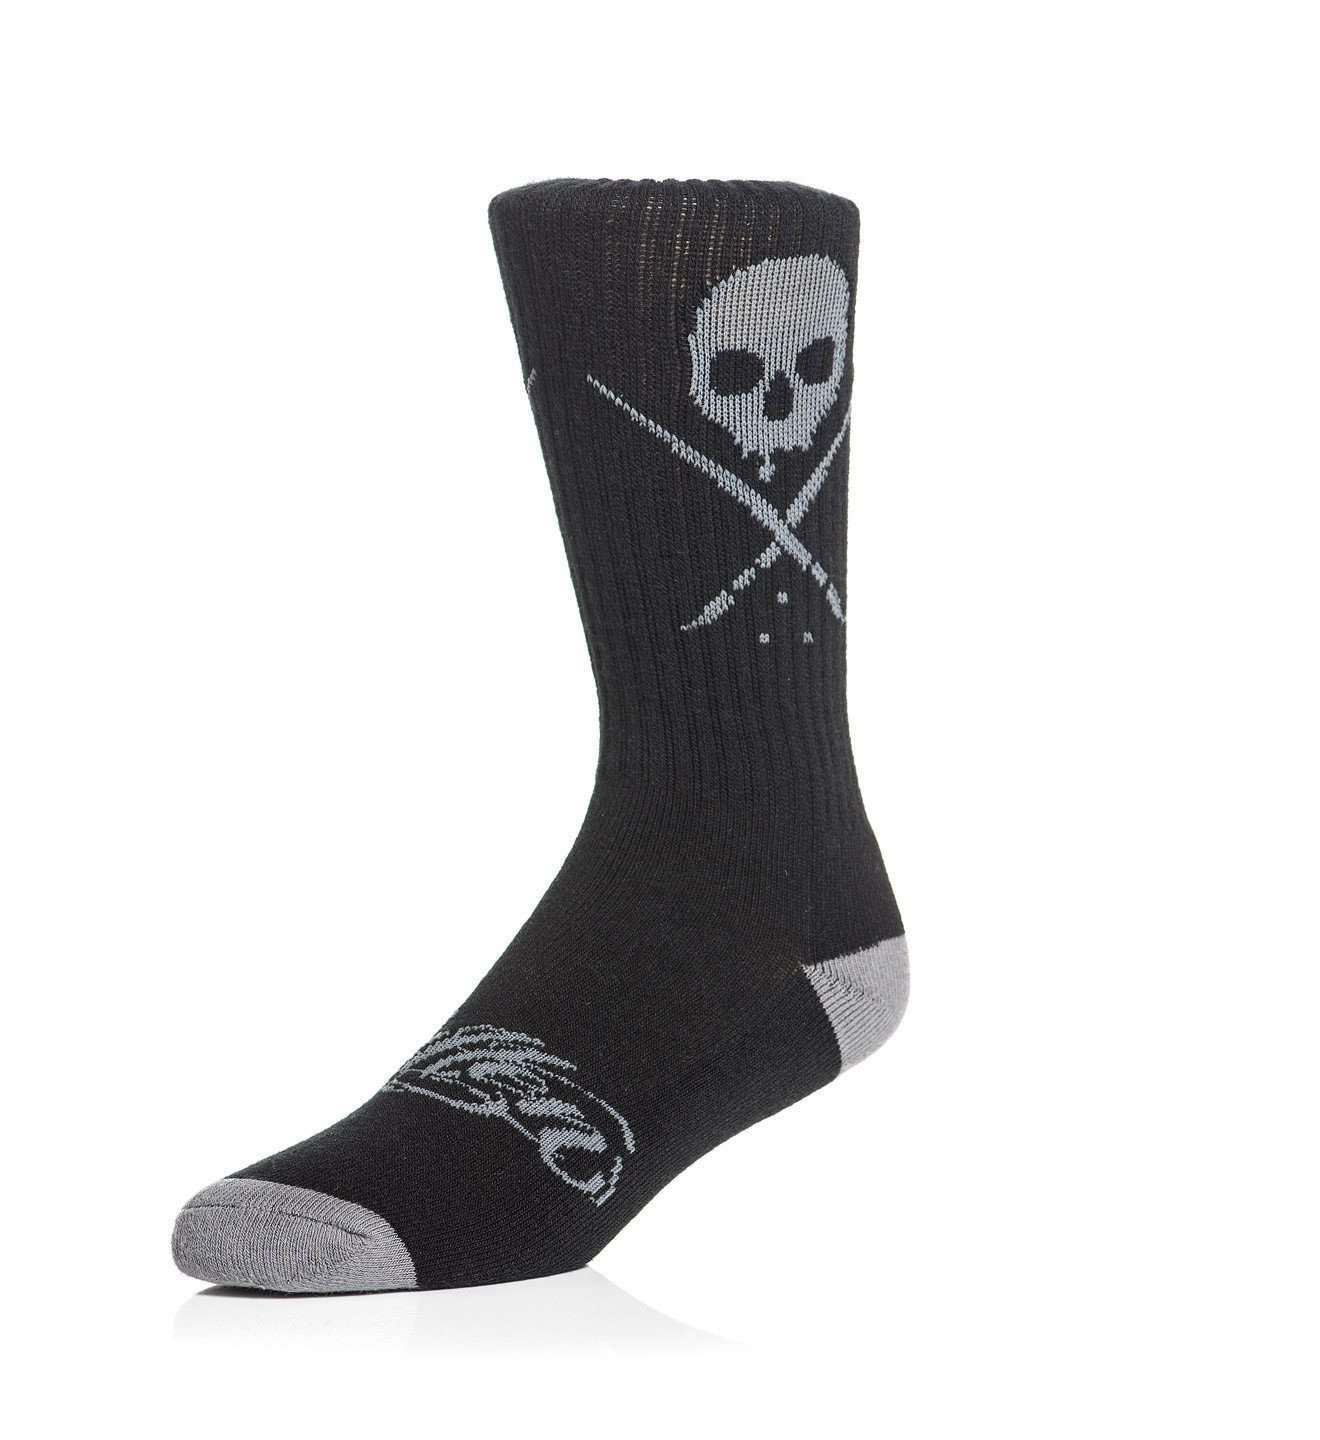 Standard Issue Socks Black/Gray - Sullen Art Co.